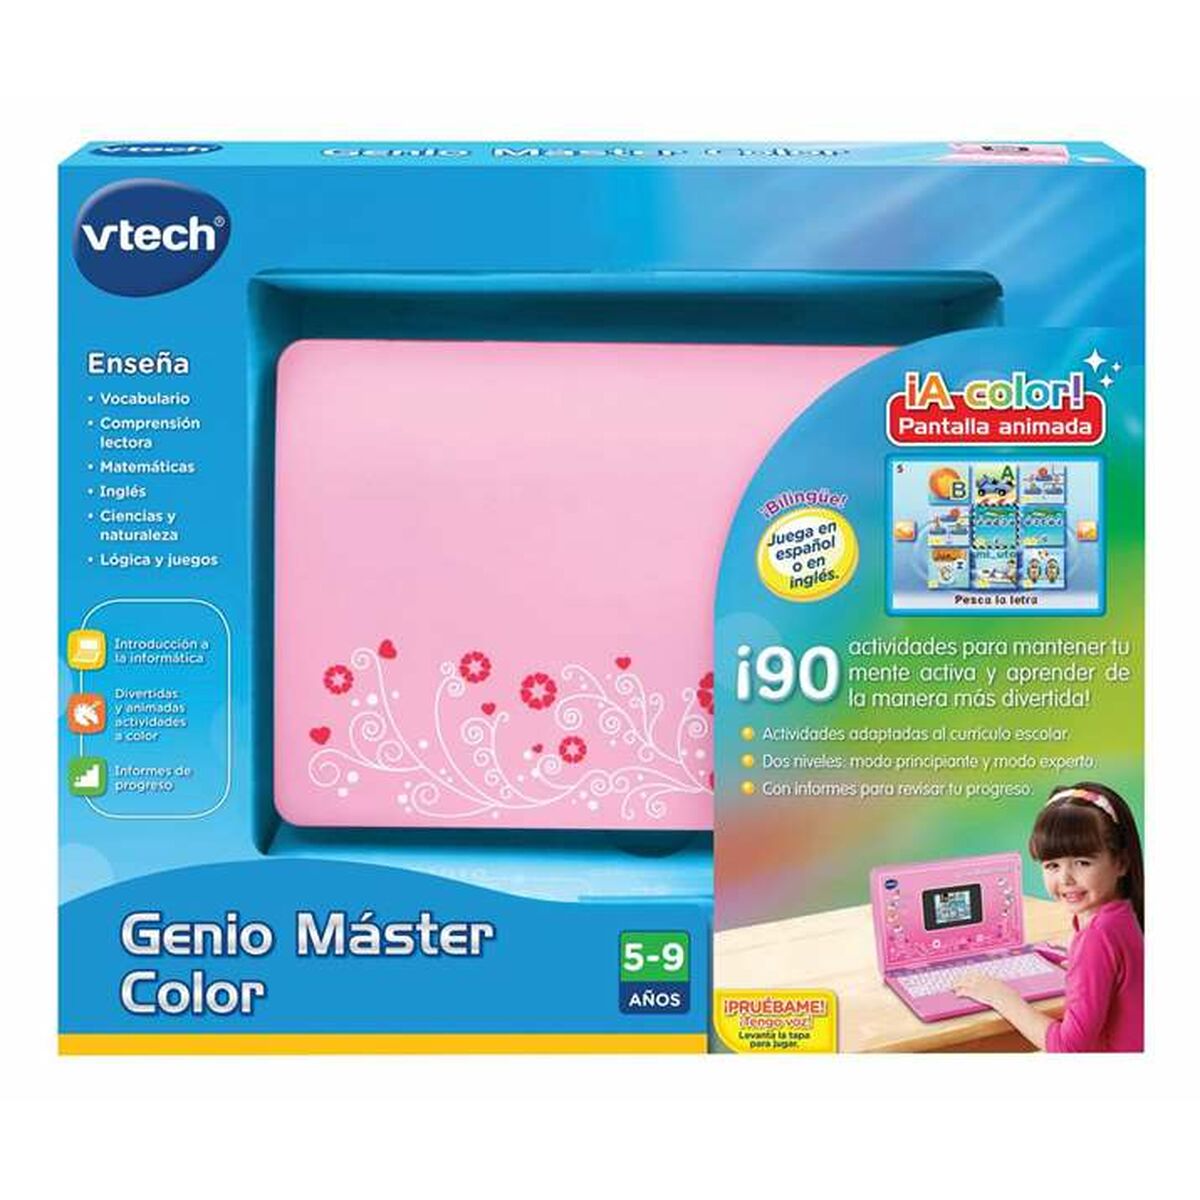 Toy computer Vtech Genio Master Color ES-EN 18 x 27 x 4 cm Pinkki